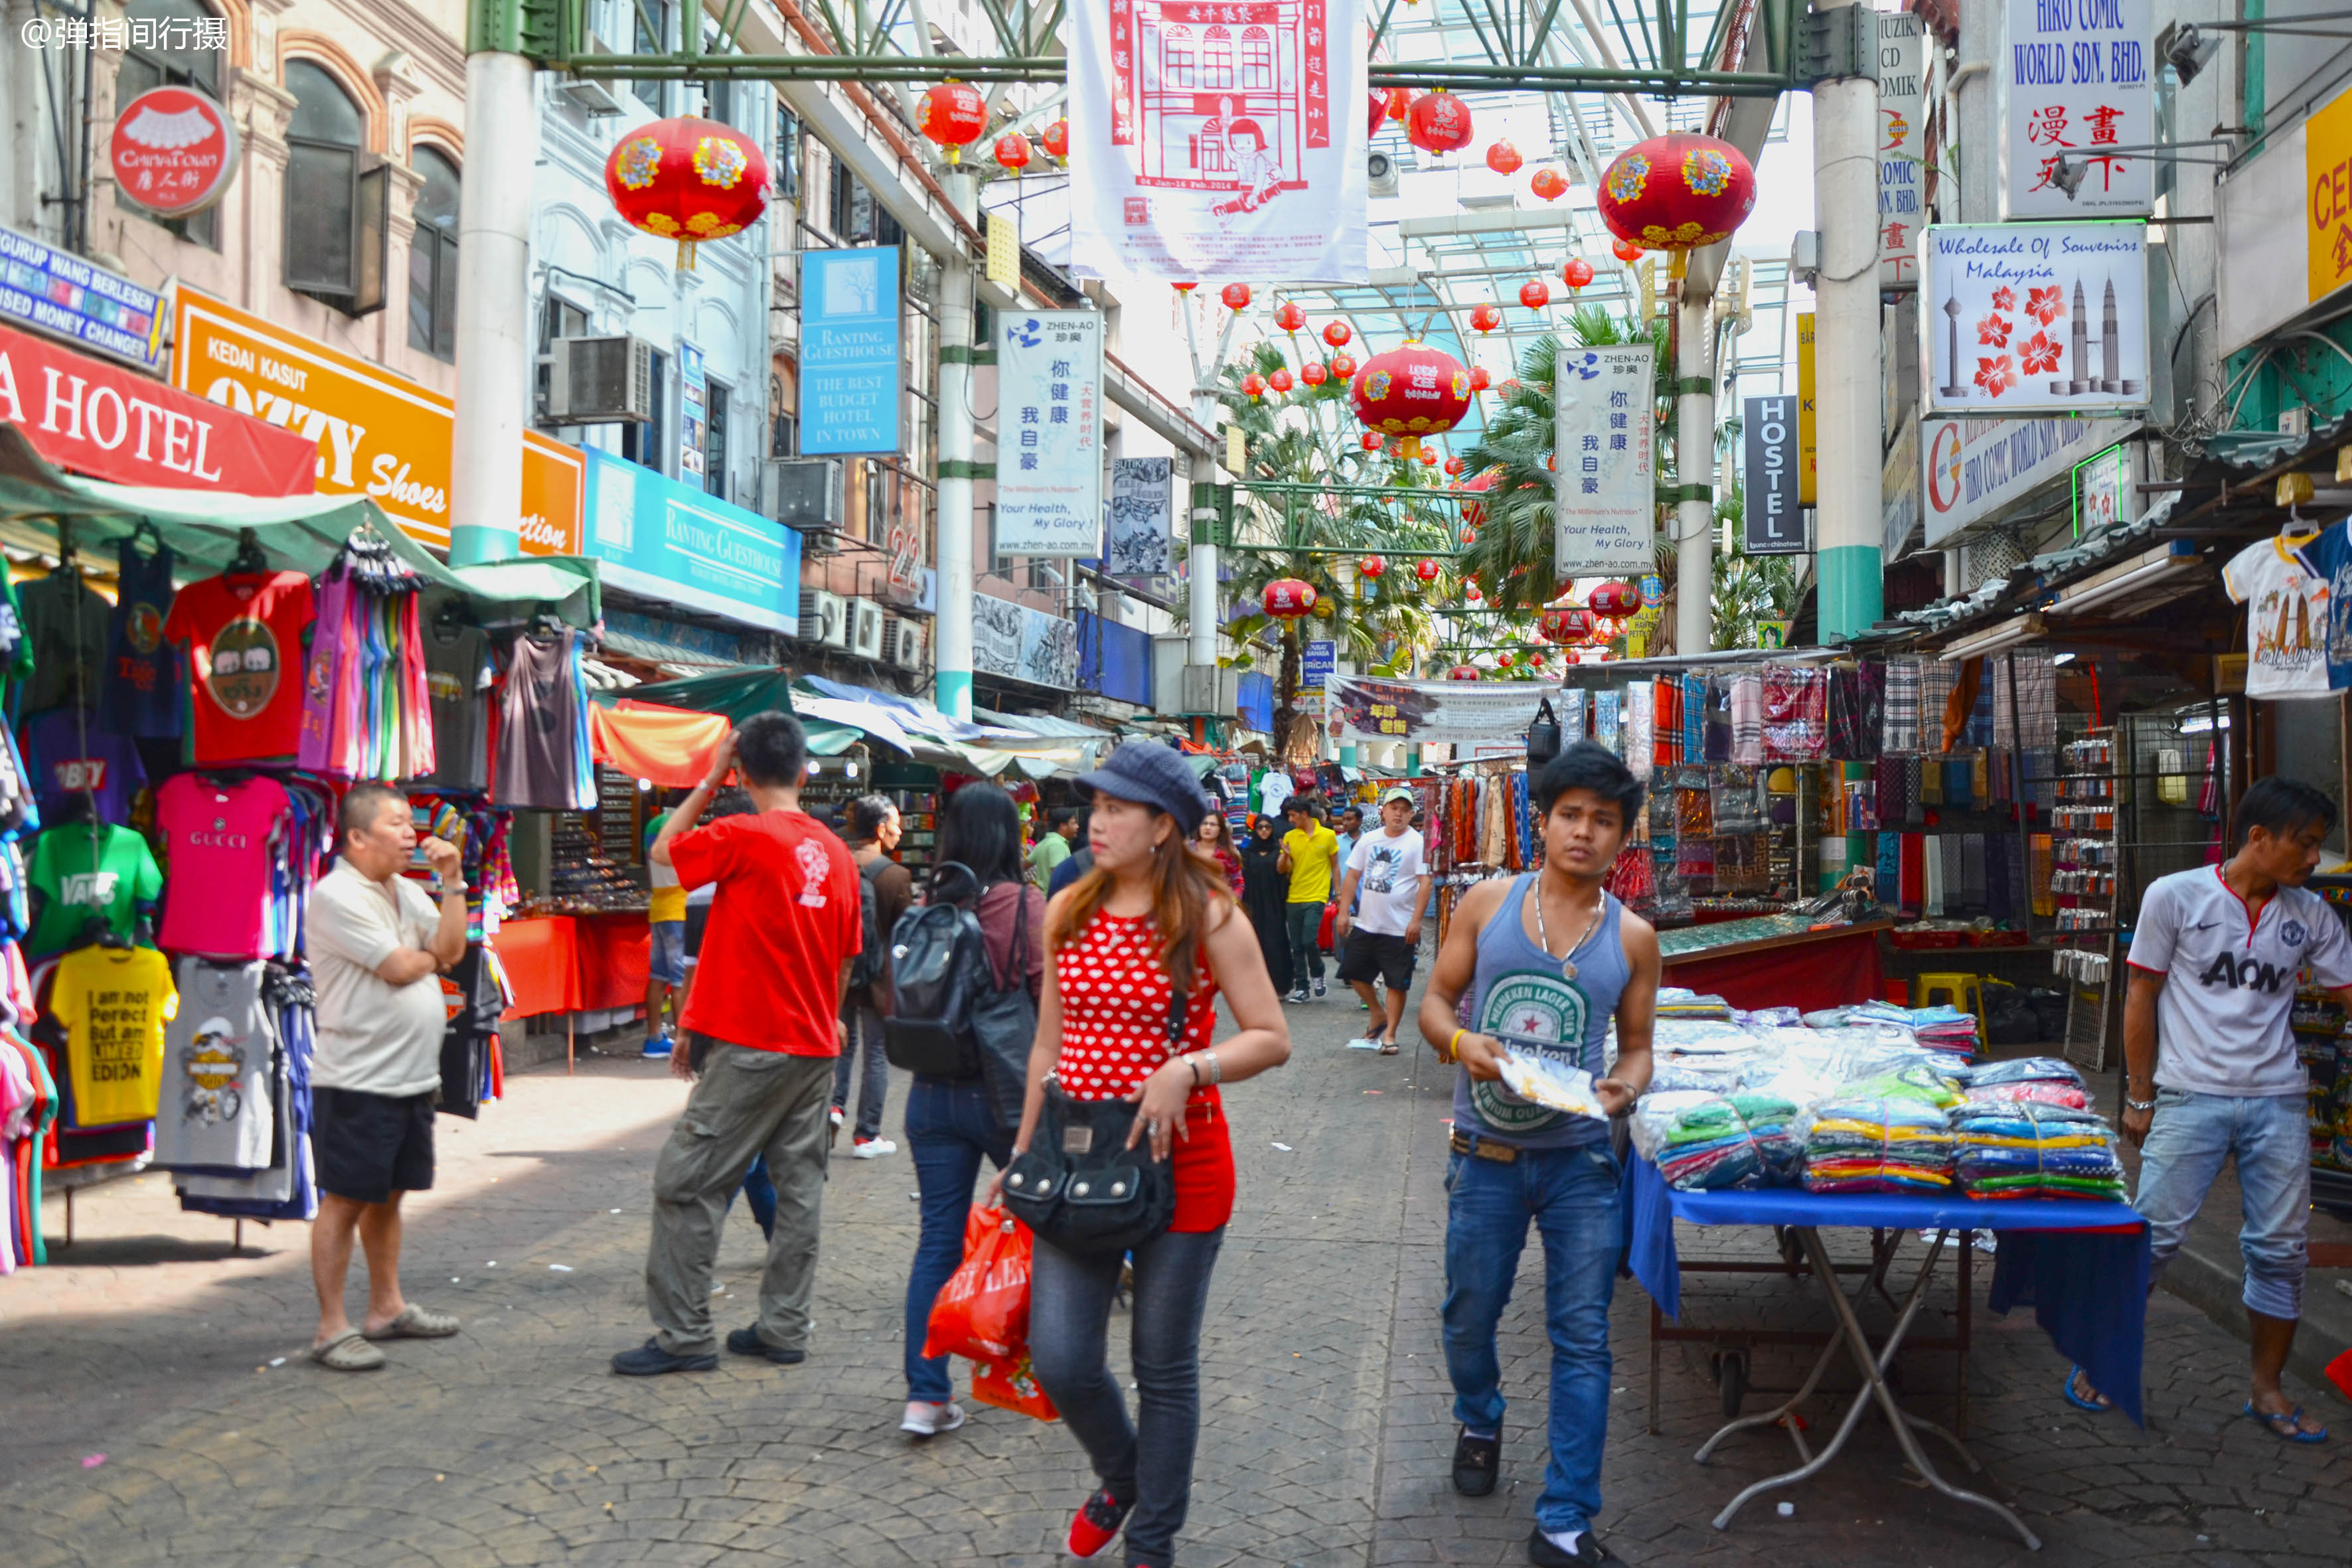 马来西亚茨厂街,号称吉隆坡义乌市场,却深受欧美游客喜欢